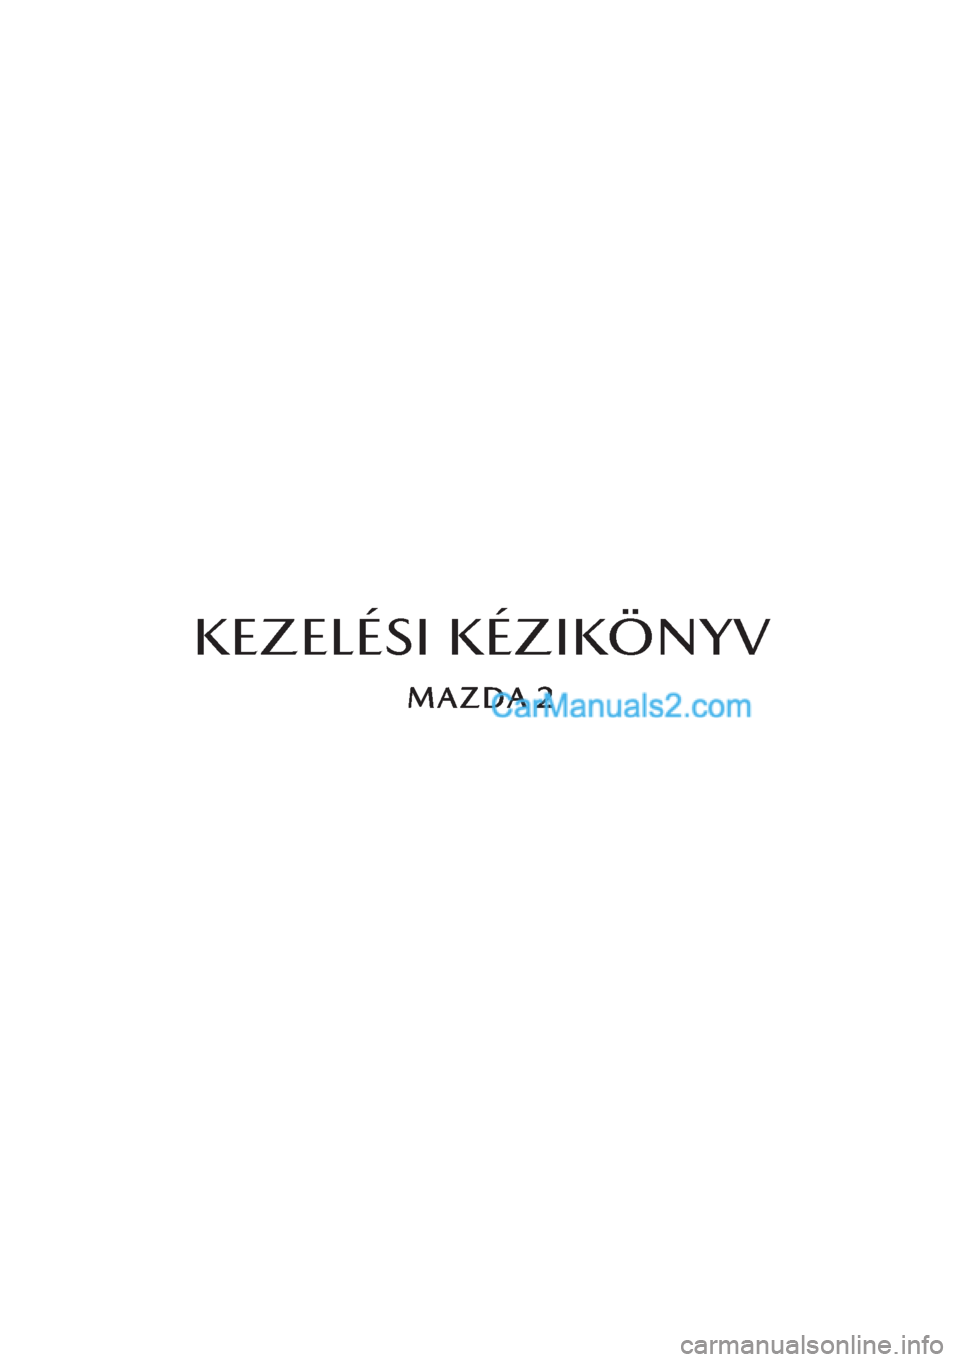 MAZDA MODEL 2 2019  Kezelési útmutató (in Hungarian) KEZELÉSI KÉZIKÖNYV  